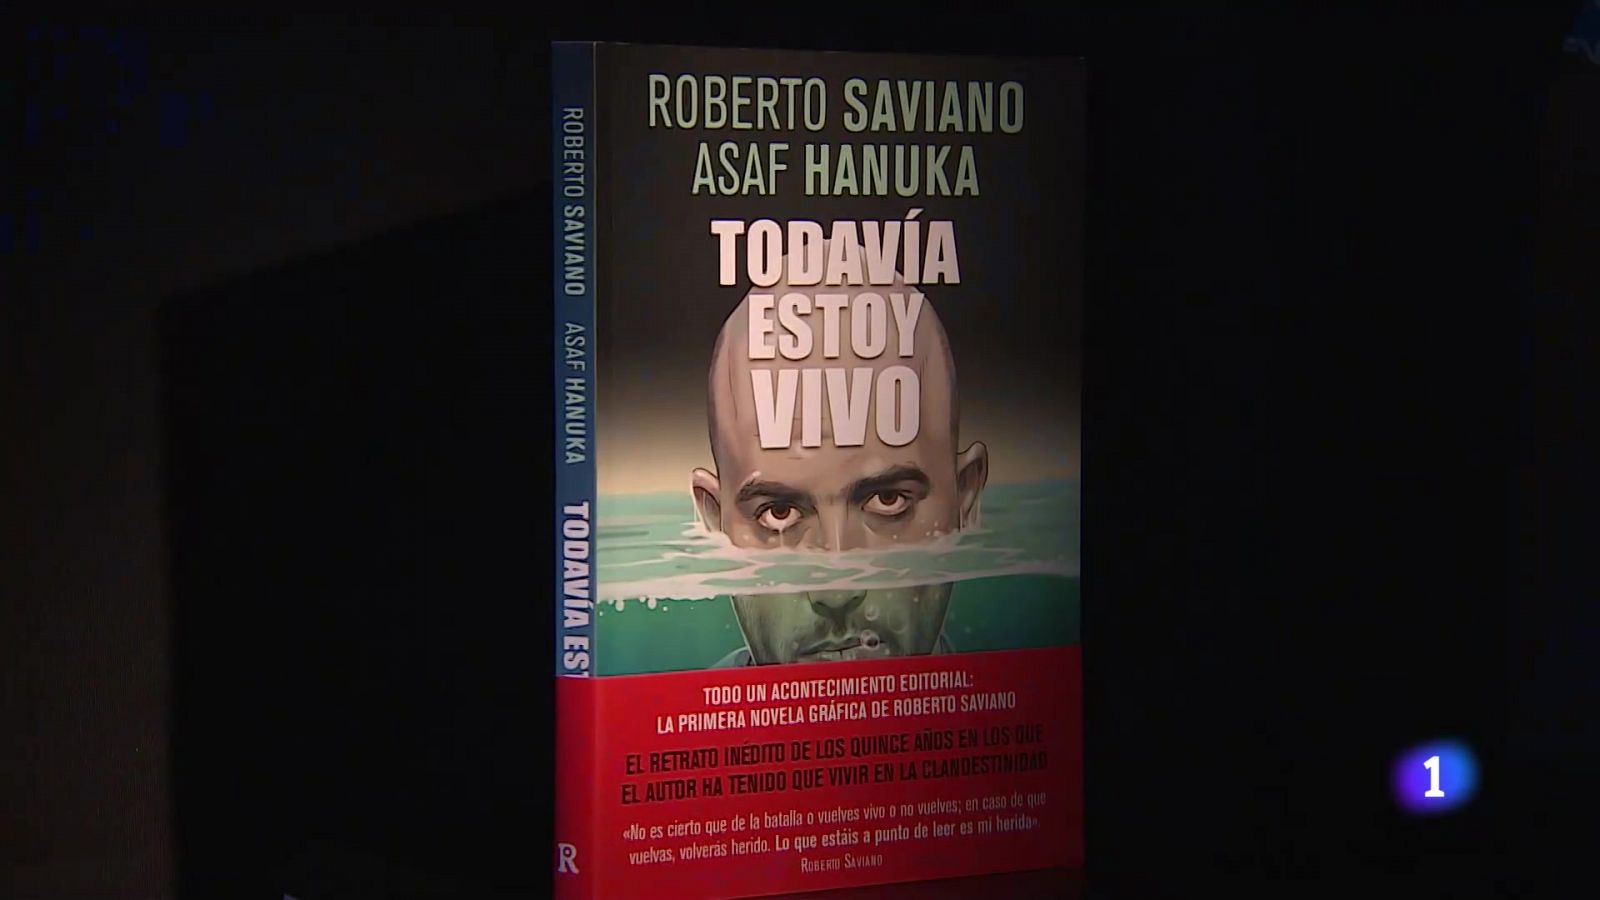 Saviano: "Bajo protección no está ni vivo ni muerto"